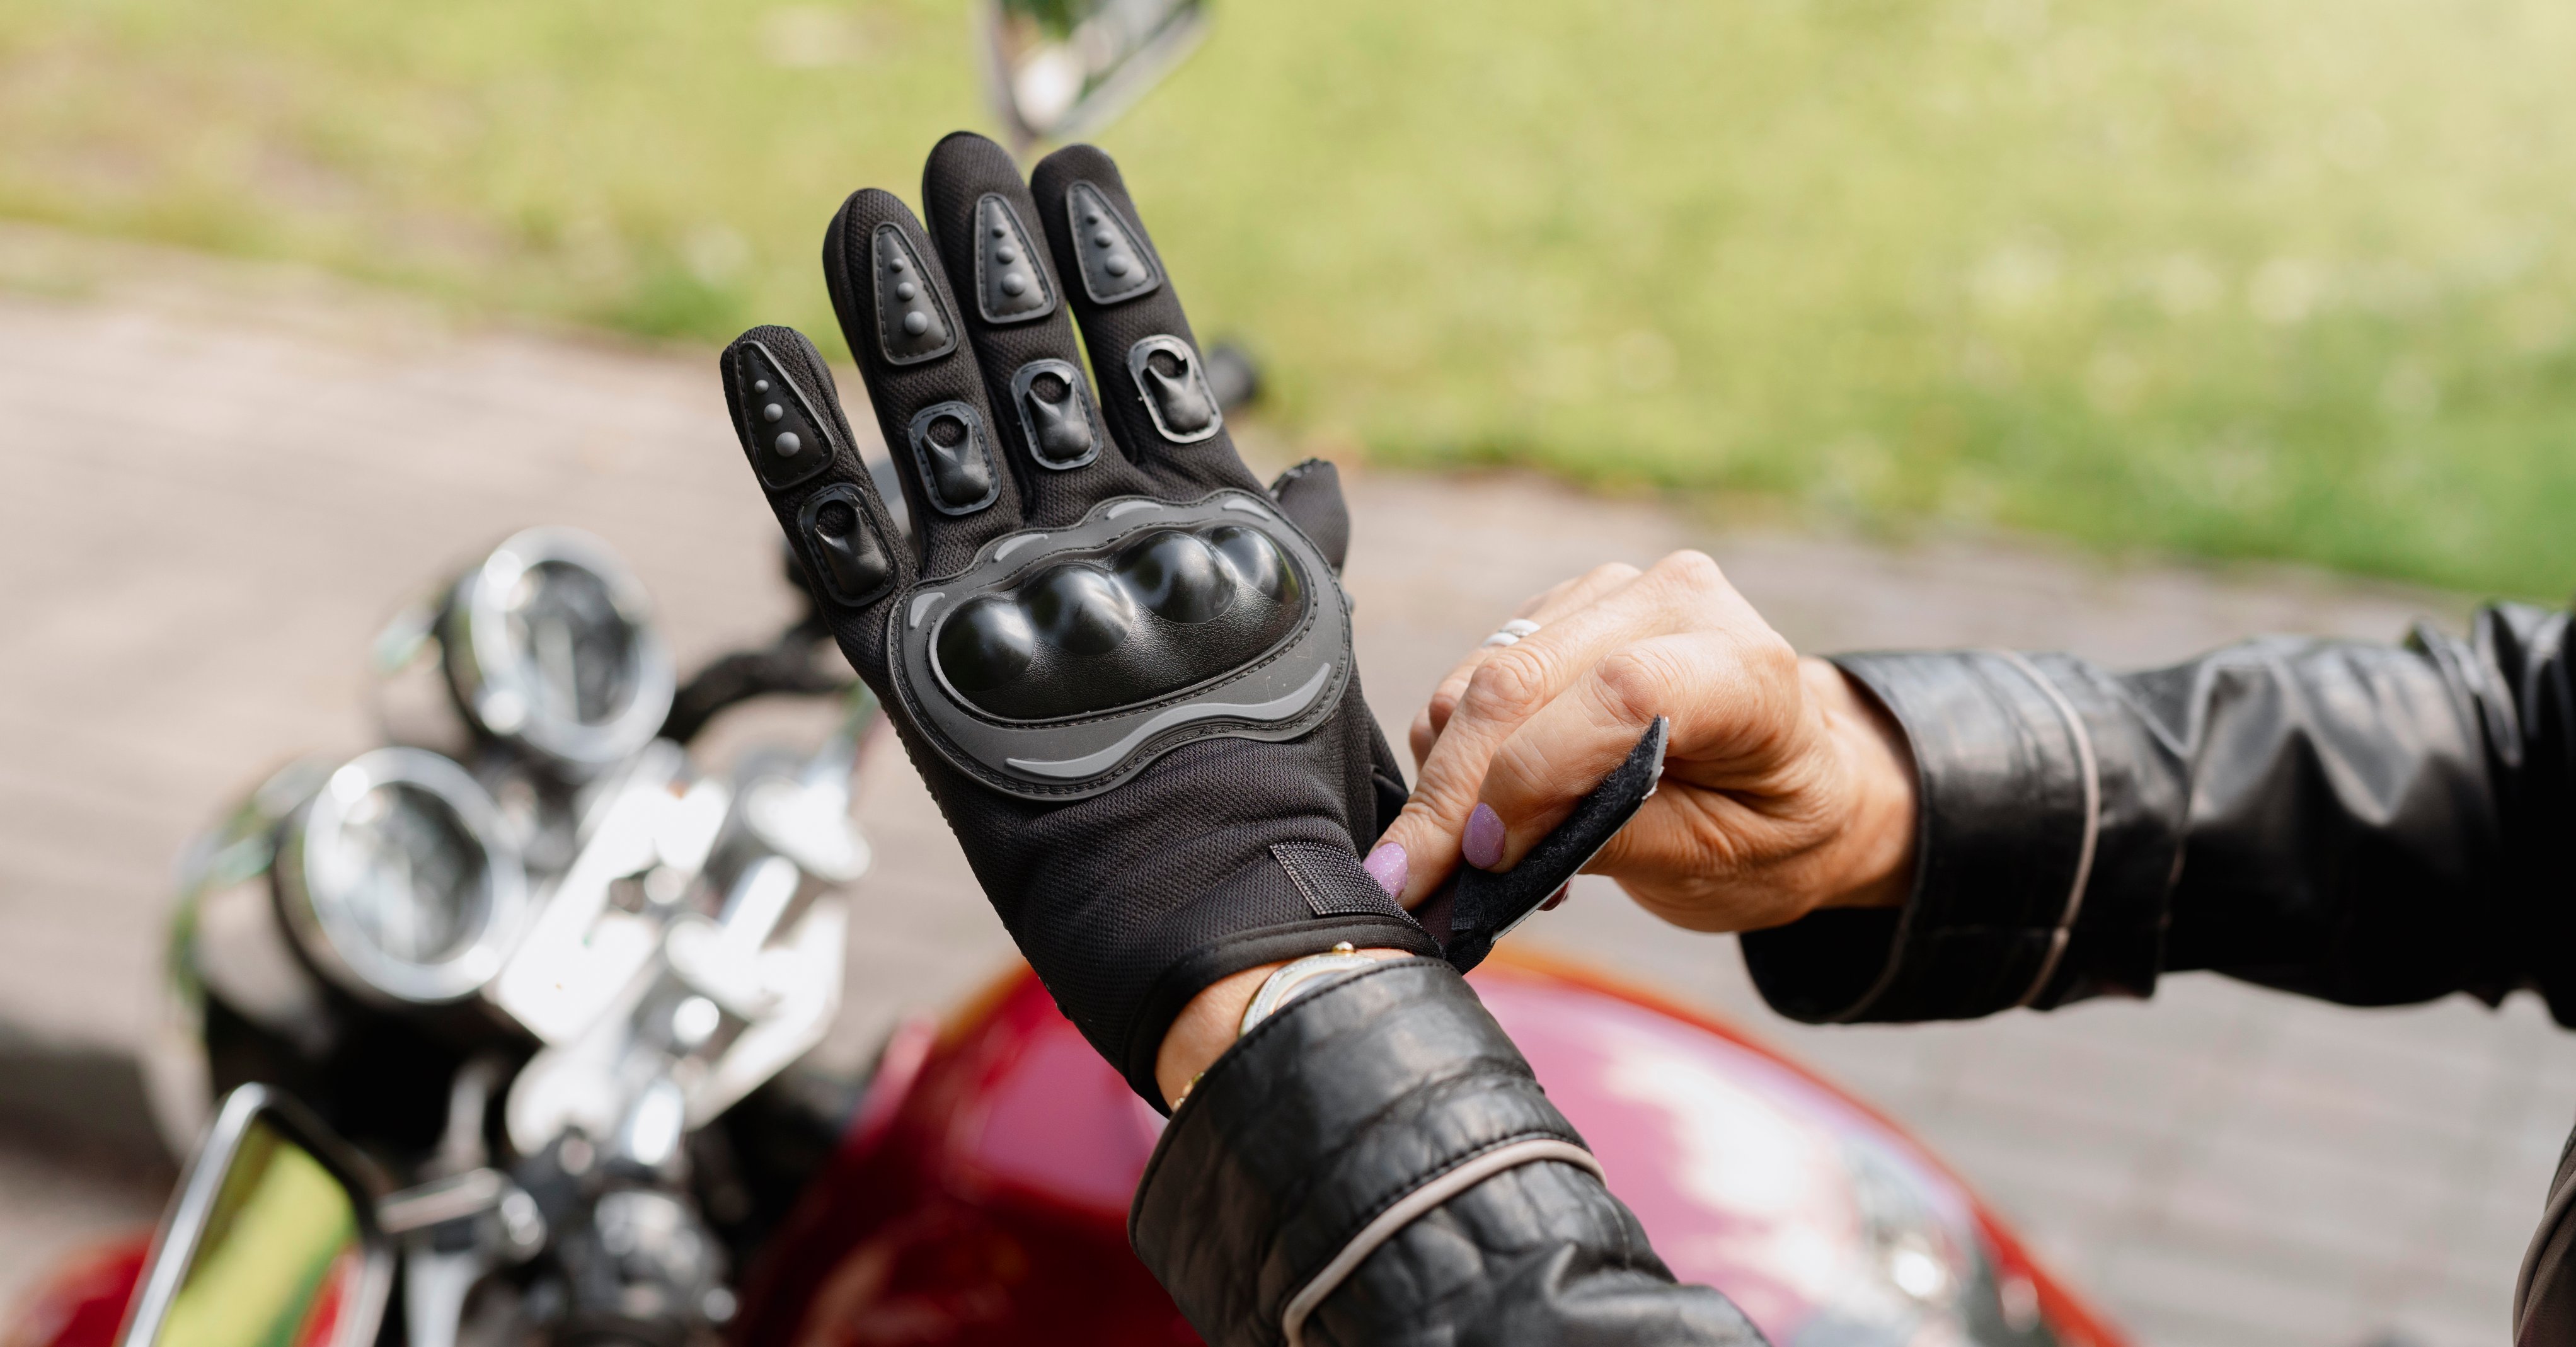 27 ideas de Accesorios moto  accesorios moto, cascos de moto, ropa de moto